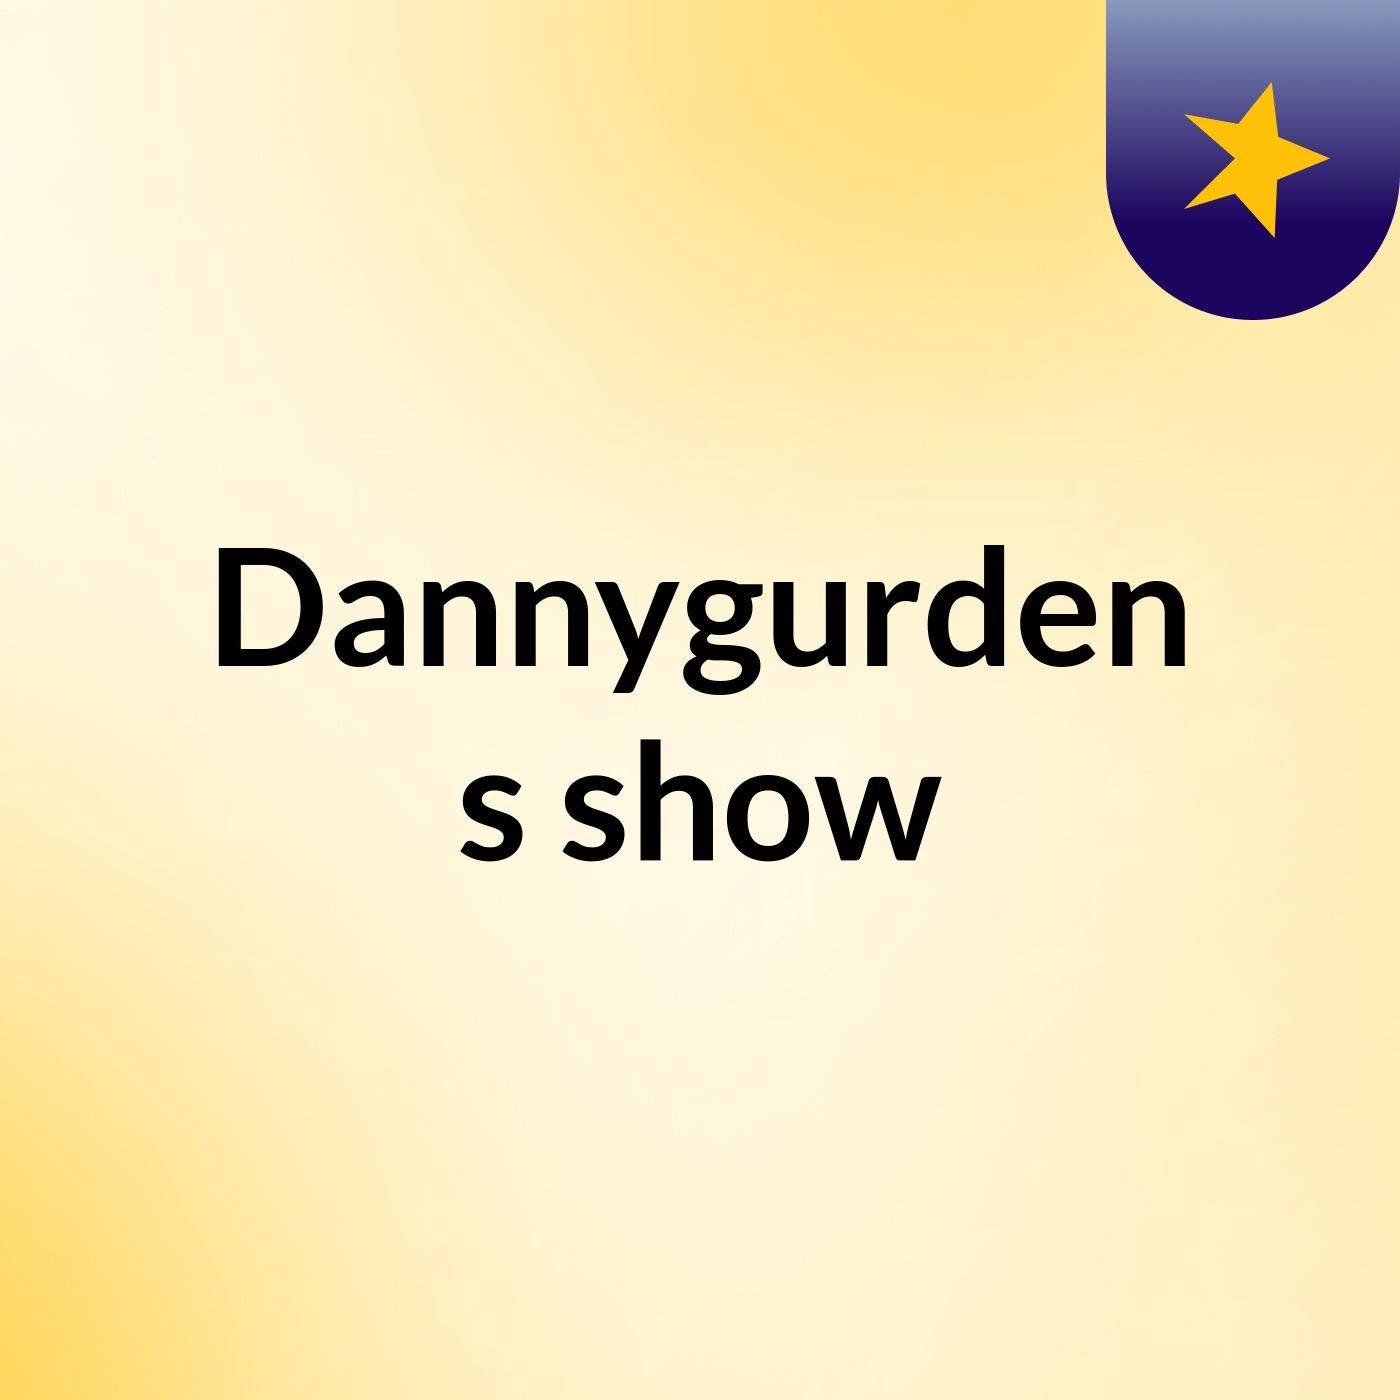 Dannygurden's show